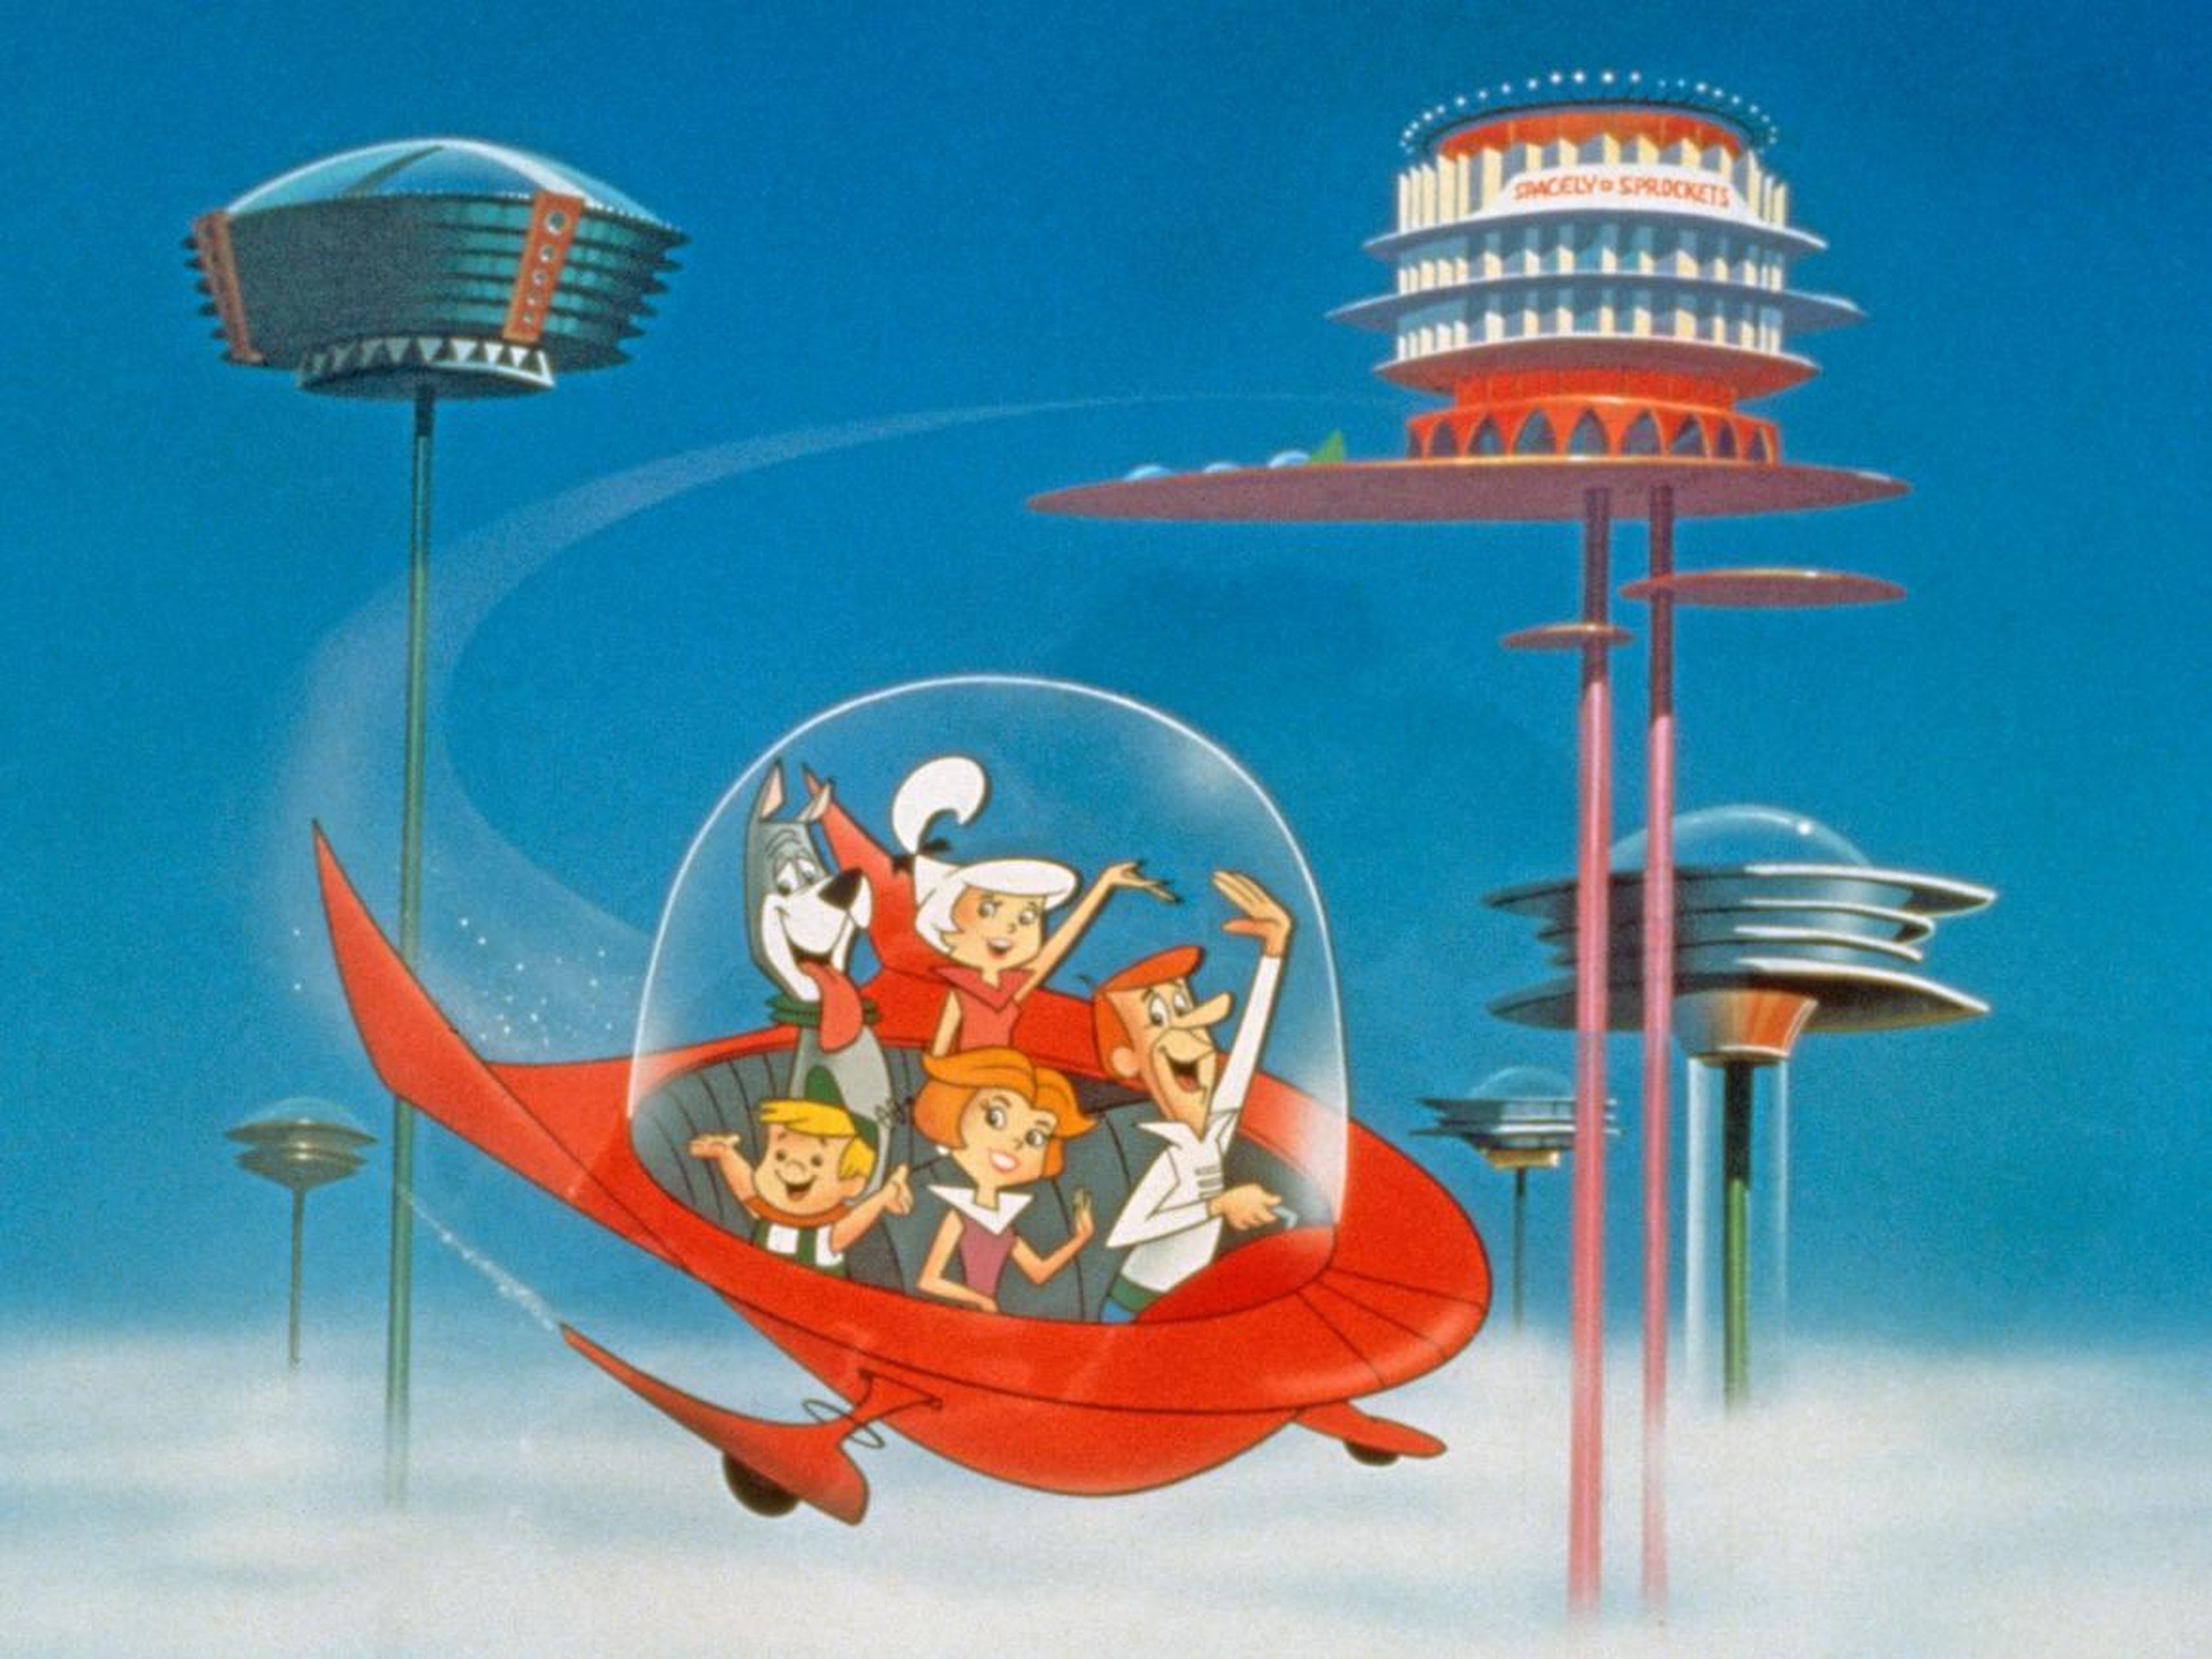 Imagen de la serie animada de televisión "Los Supersónicos", alrededor de 1962.